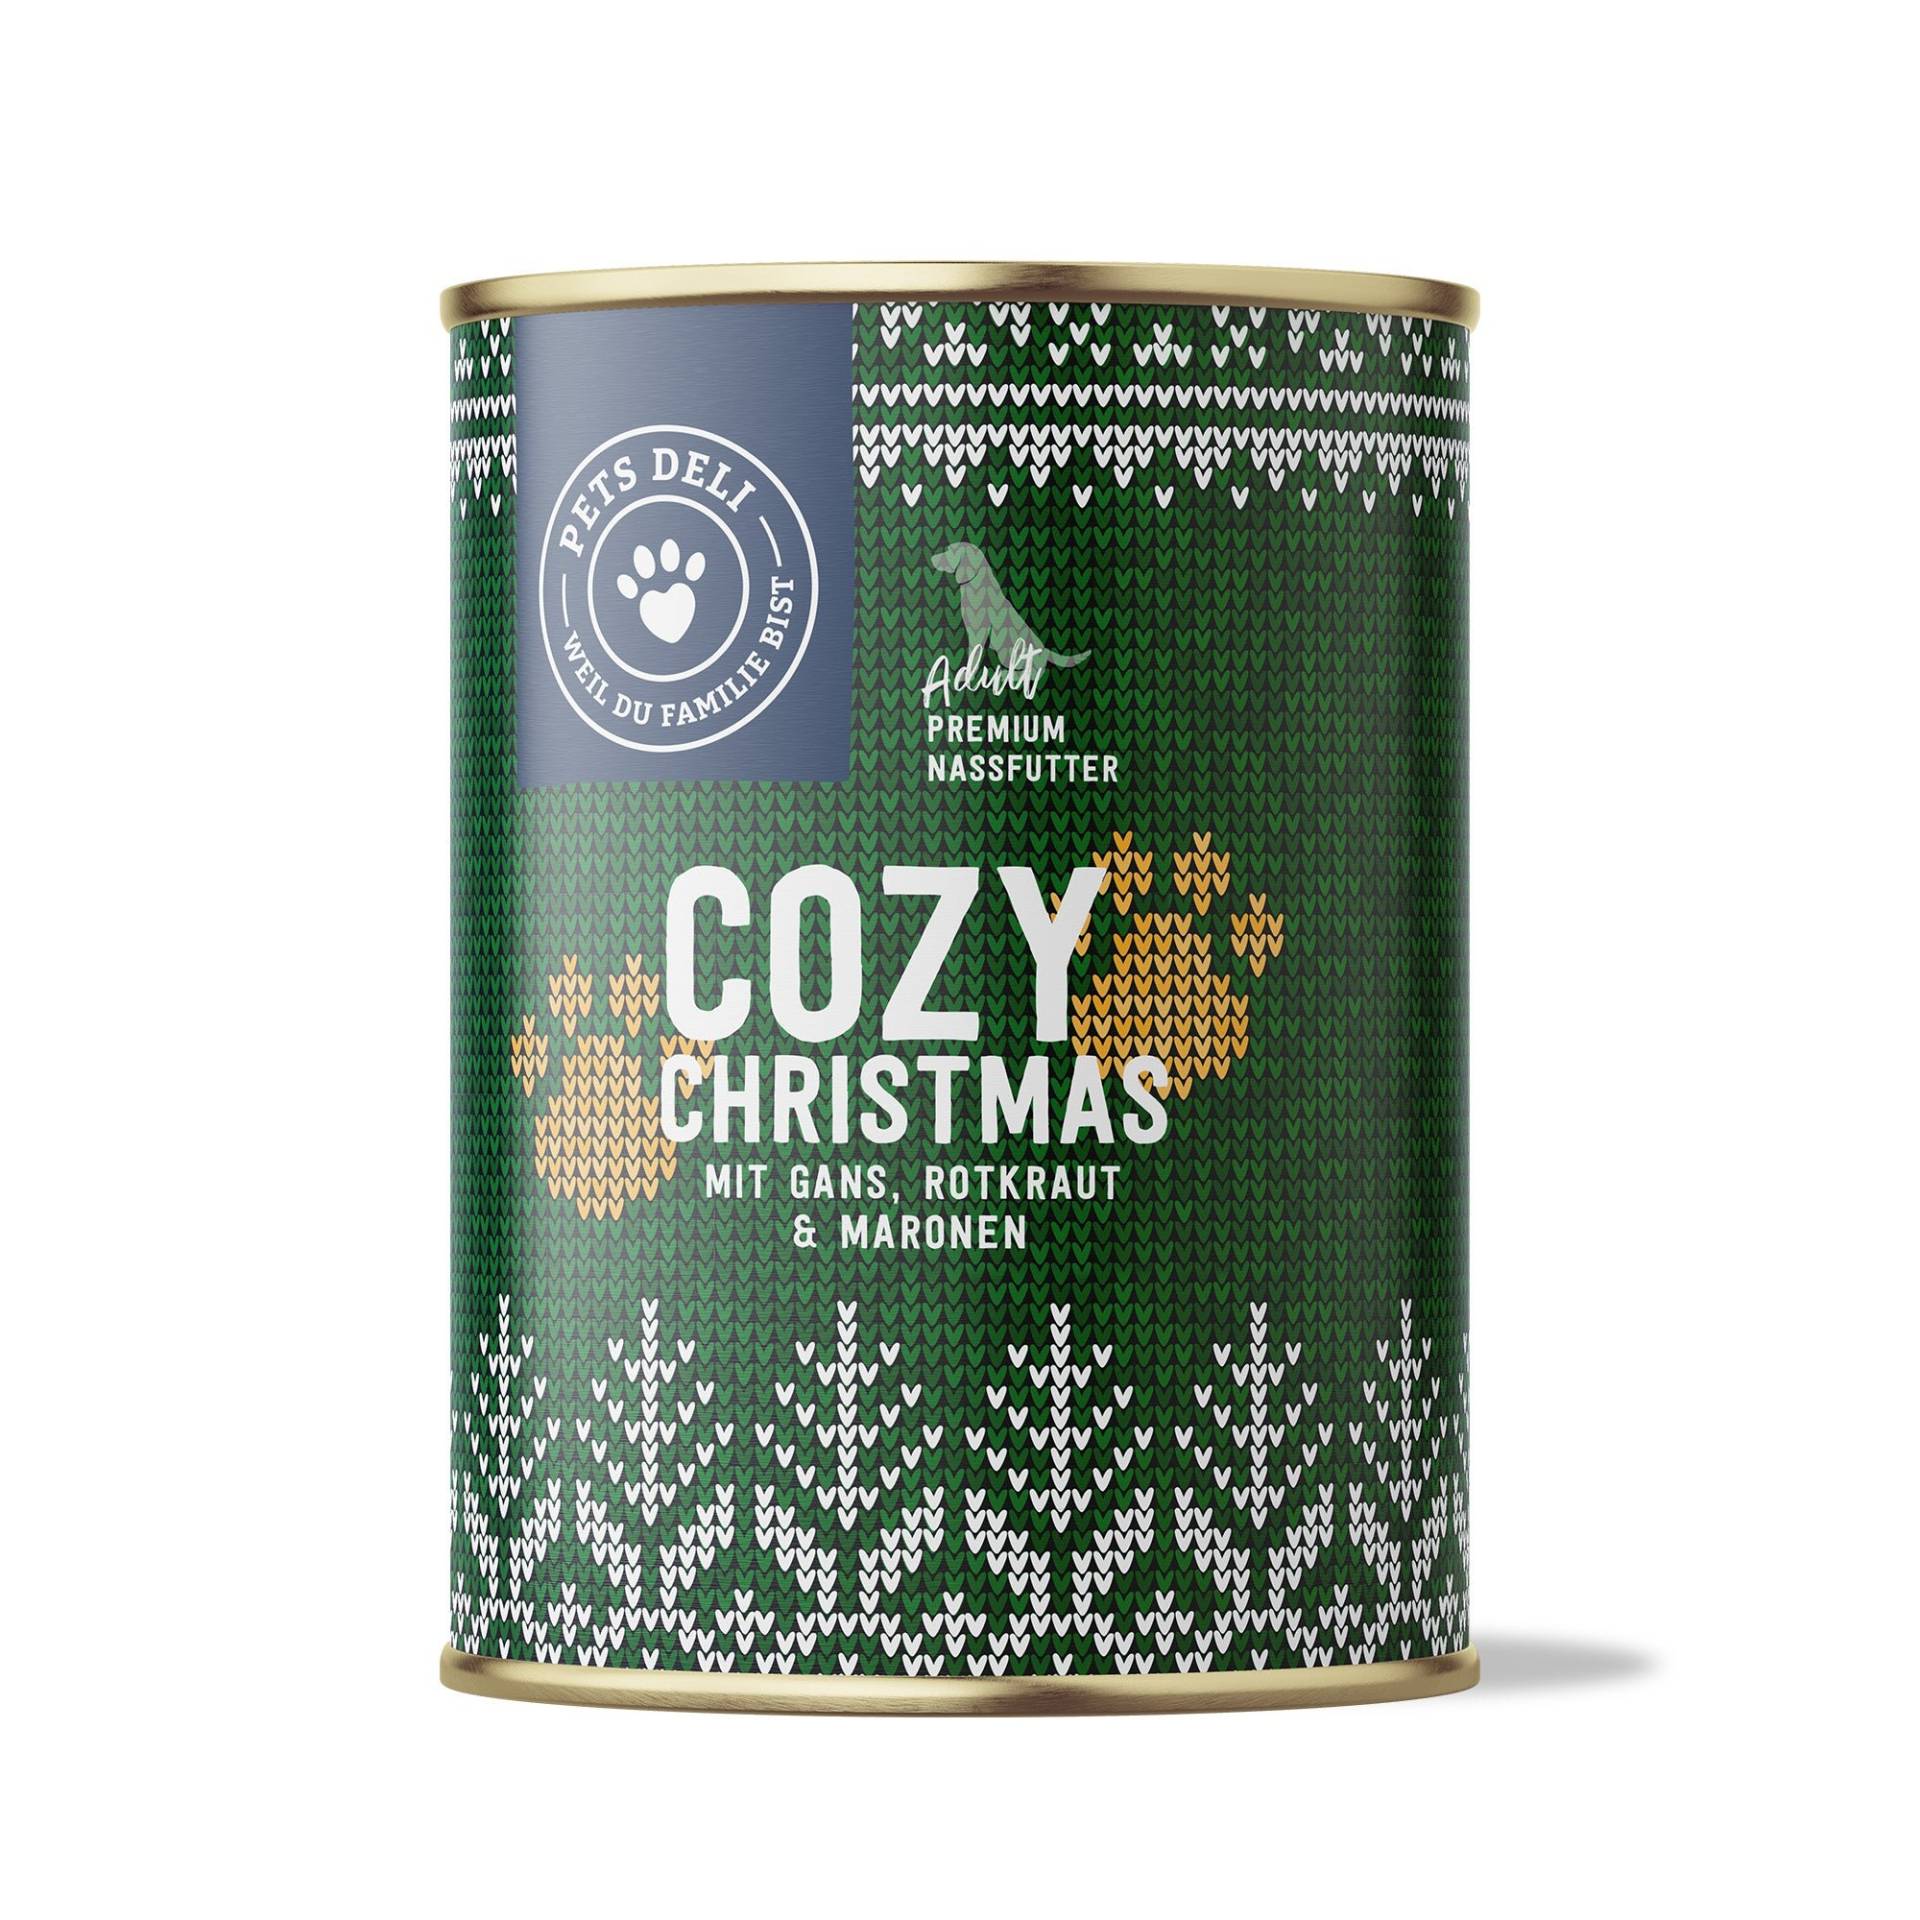 Nassfutter Limited Cozy Christmas für Hunde - 400g / Einzeldose von Pets Deli